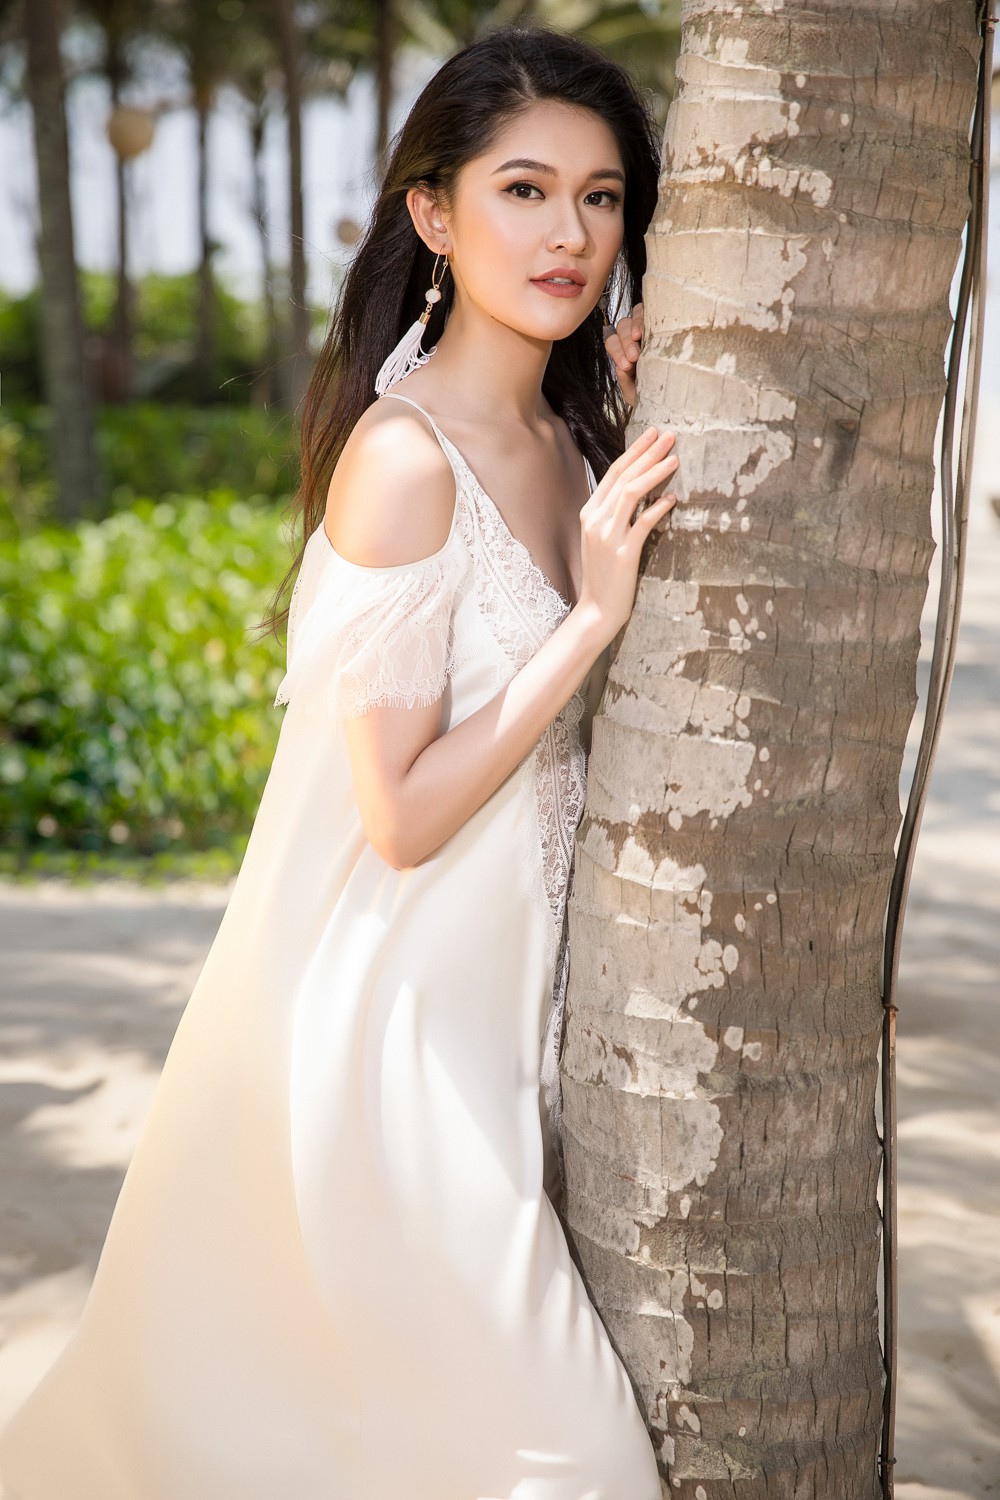 Ghen tỵ với bộ ảnh đẹp lung linh của Hội bạn thân Hoa hậu Mỹ Linh - Thùy Dung - Thanh Tú - Ảnh 14.